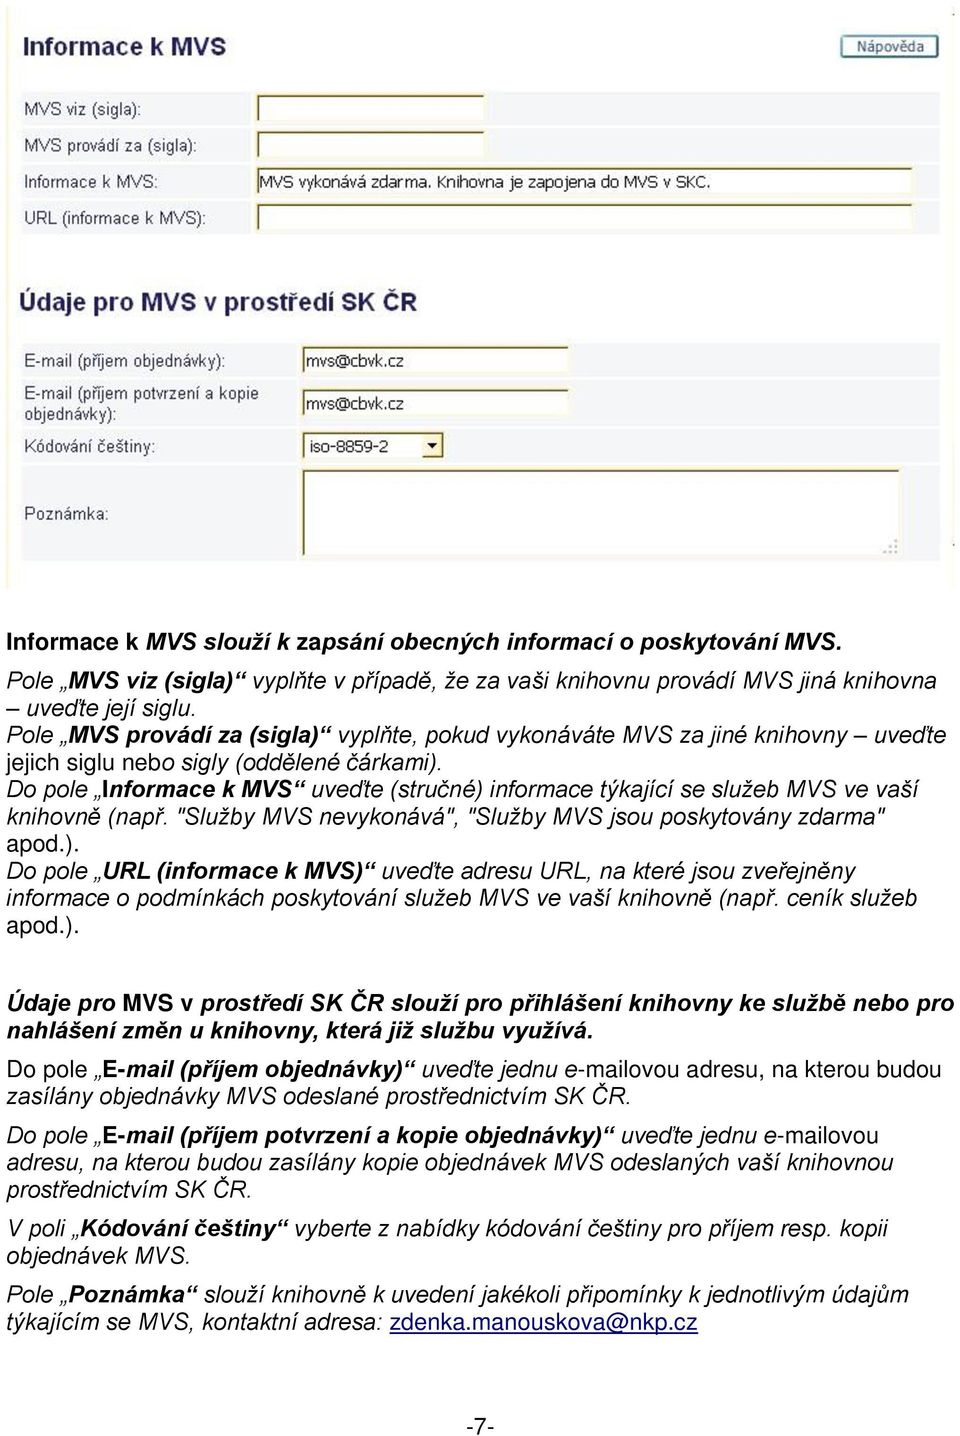 Do pole Informace k MVS uveďte (stručné) informace týkající se služeb MVS ve vaší knihovně (např. "Služby MVS nevykonává", "Služby MVS jsou poskytovány zdarma" apod.). Do pole URL (informace k MVS) uveďte adresu URL, na které jsou zveřejněny informace o podmínkách poskytování služeb MVS ve vaší knihovně (např.